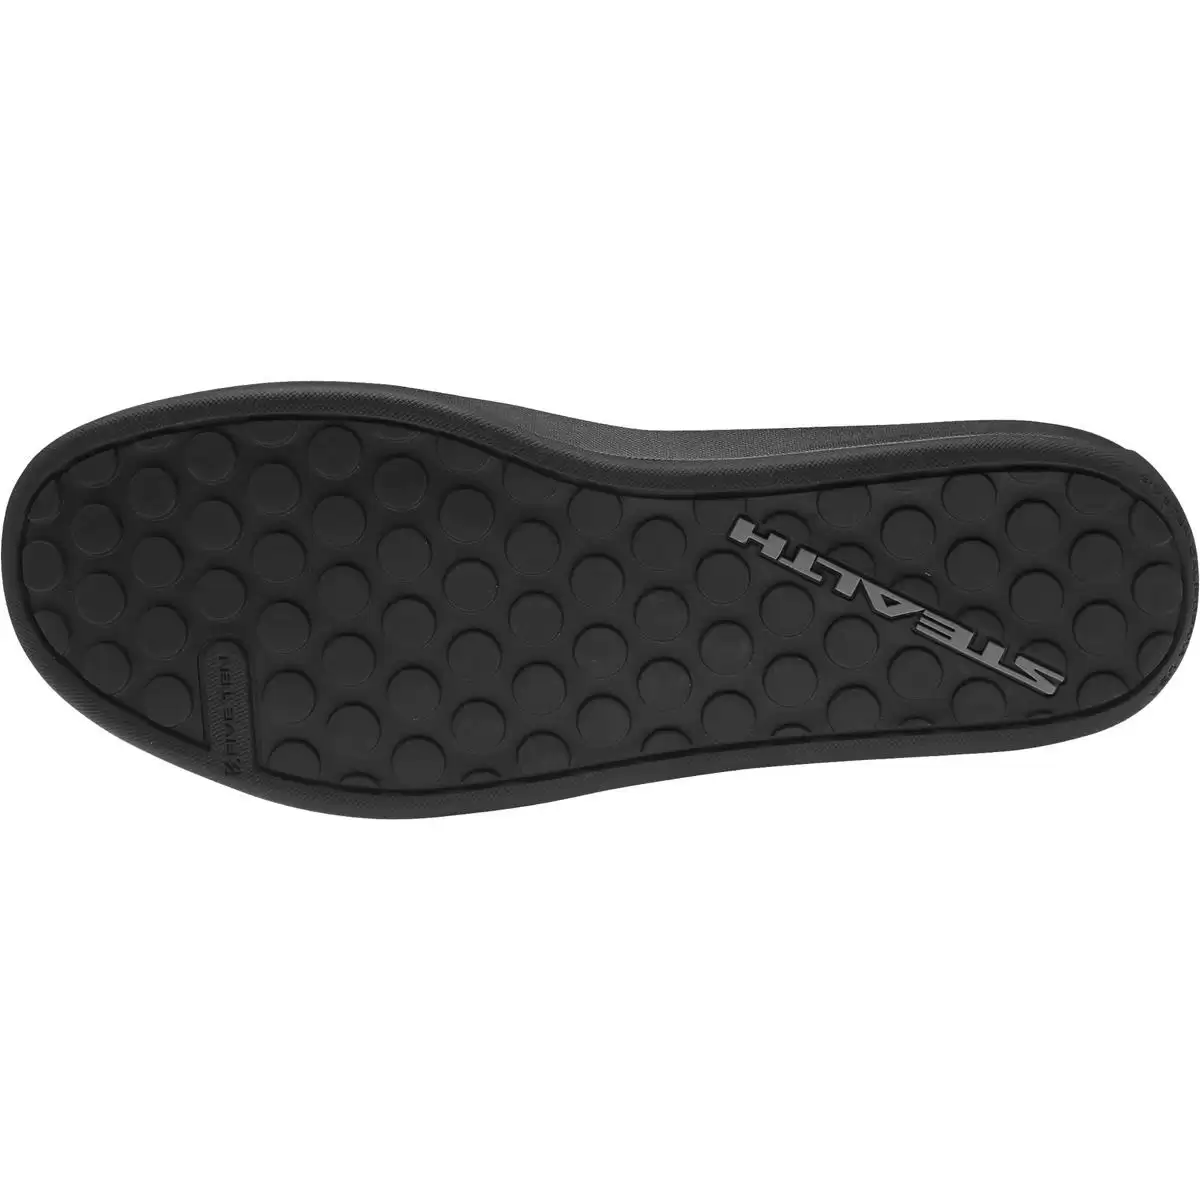 MTB Flache Schuhe Freerider Pro Primeblue Schwarz/Gelb Größe 44,5 #4